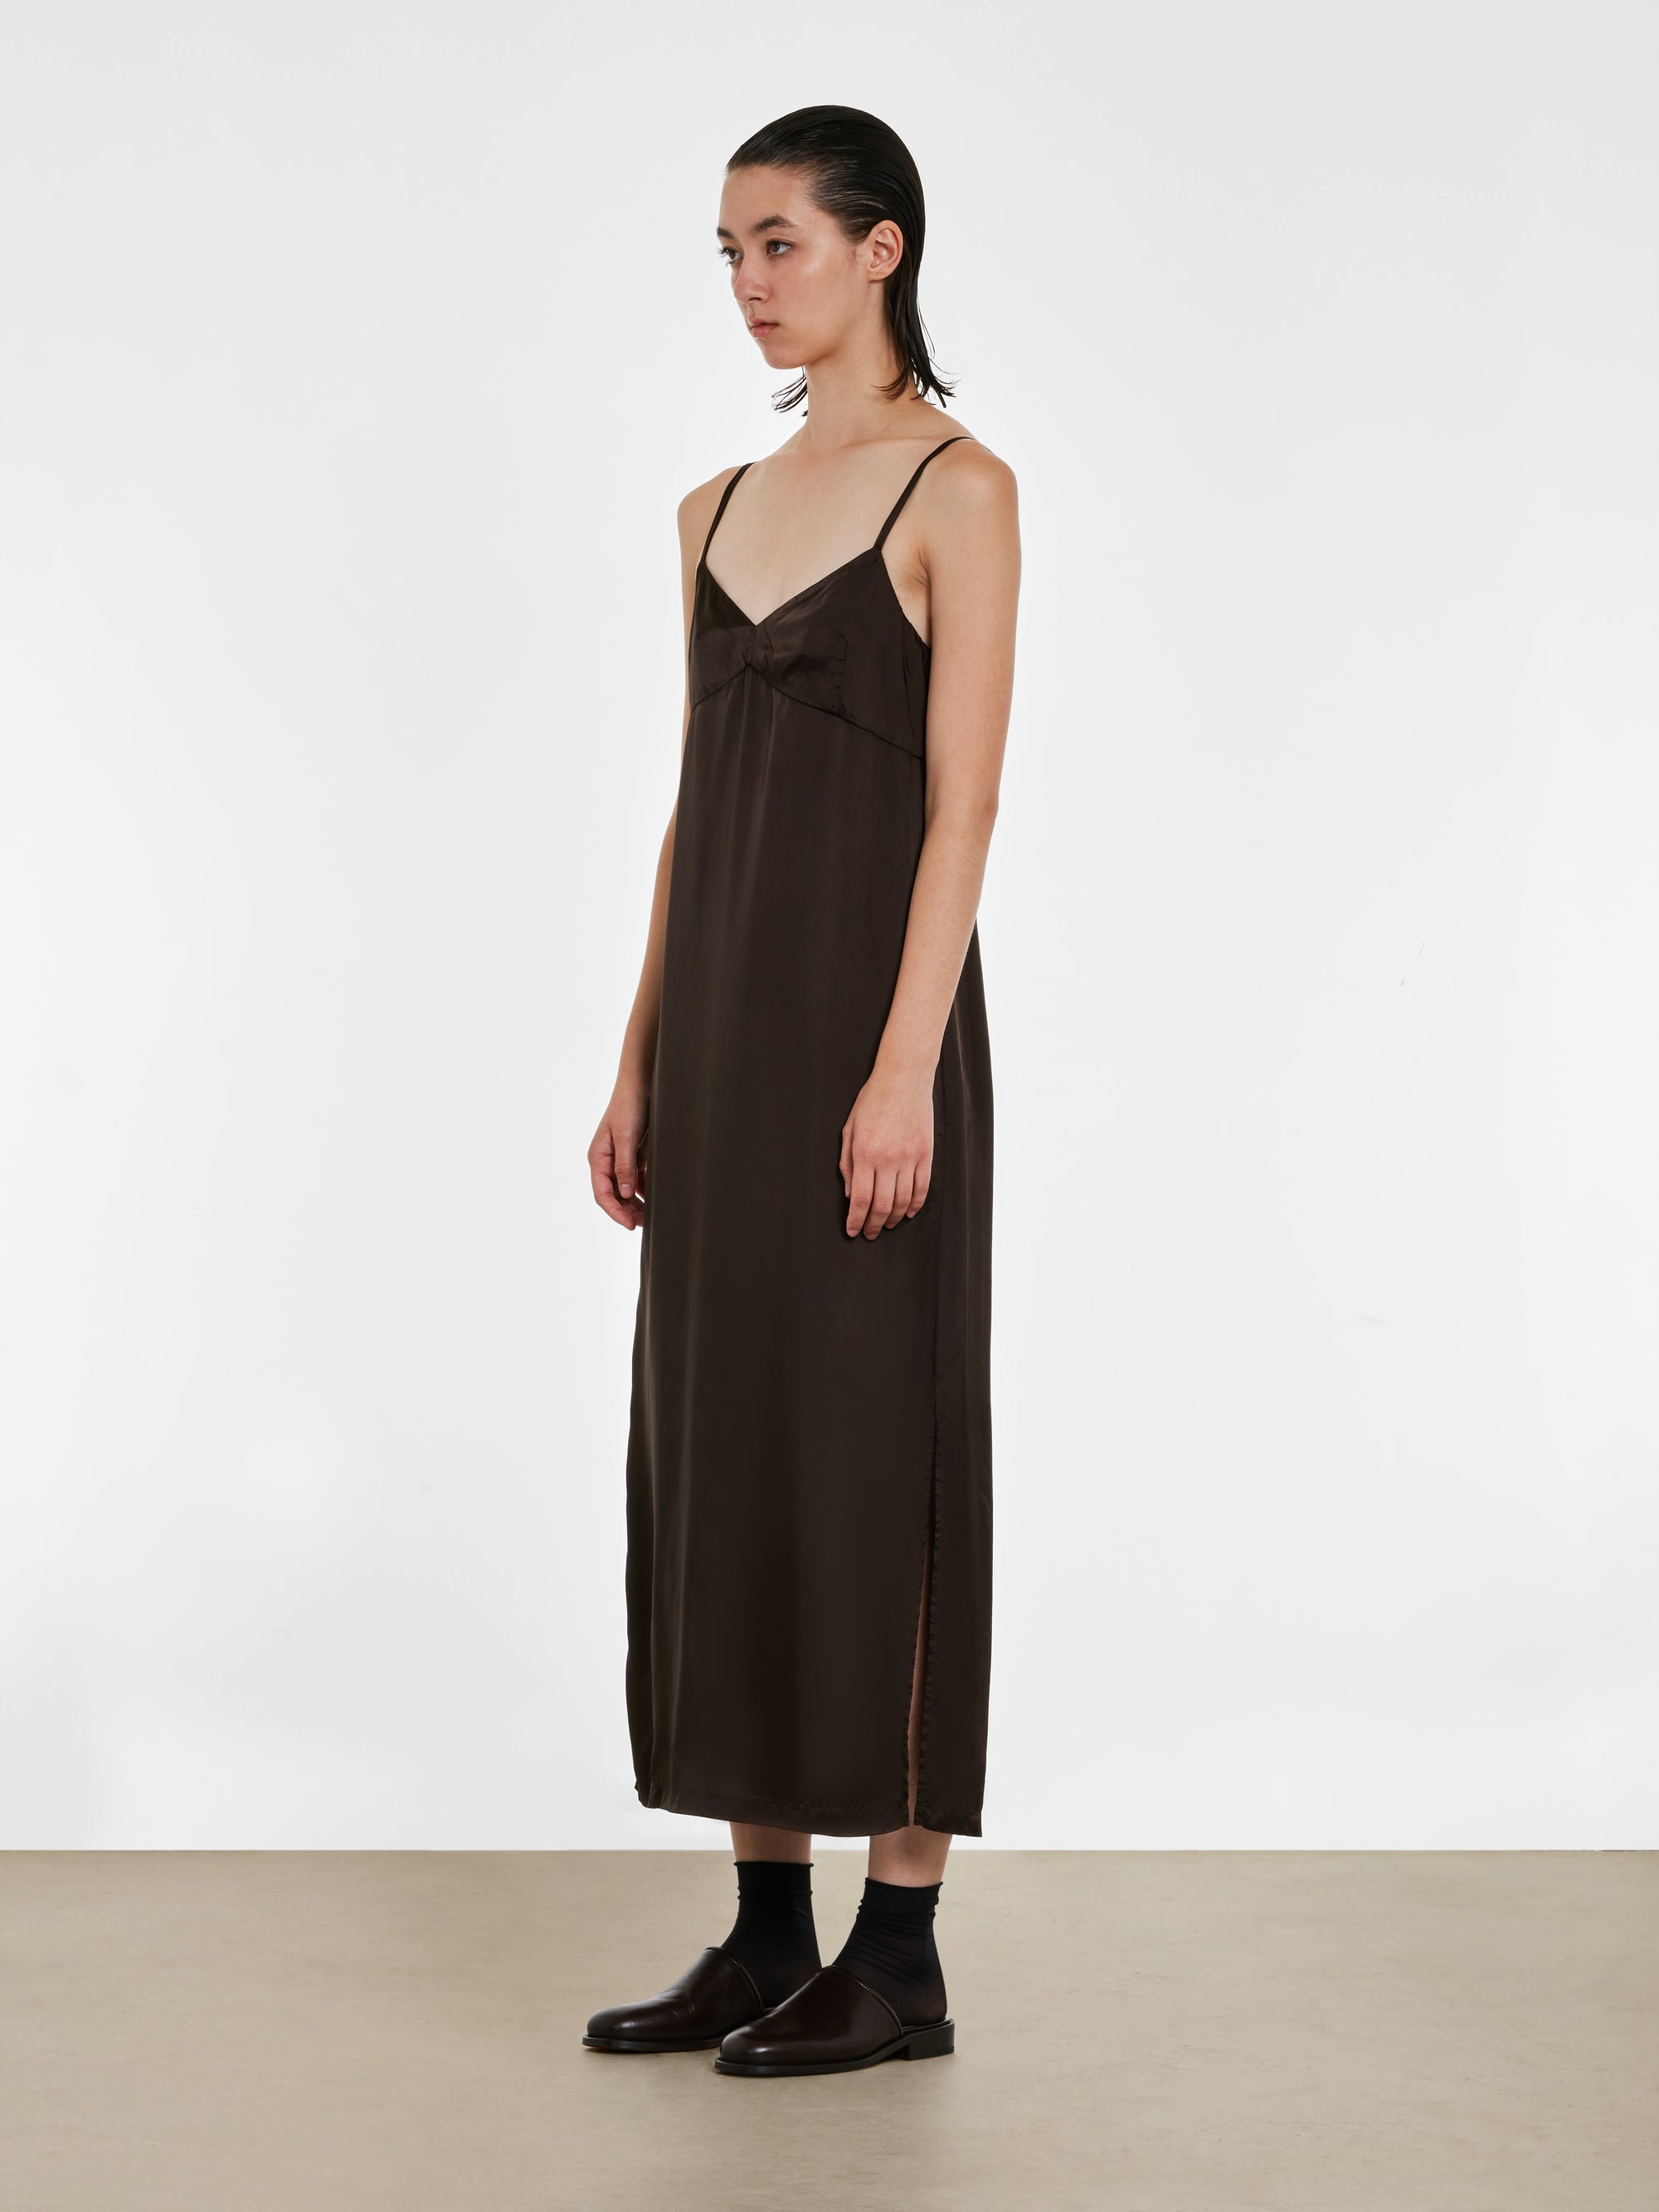 Dries Van Noten - Women’s Slip Dress - (Dark Brown) view 3